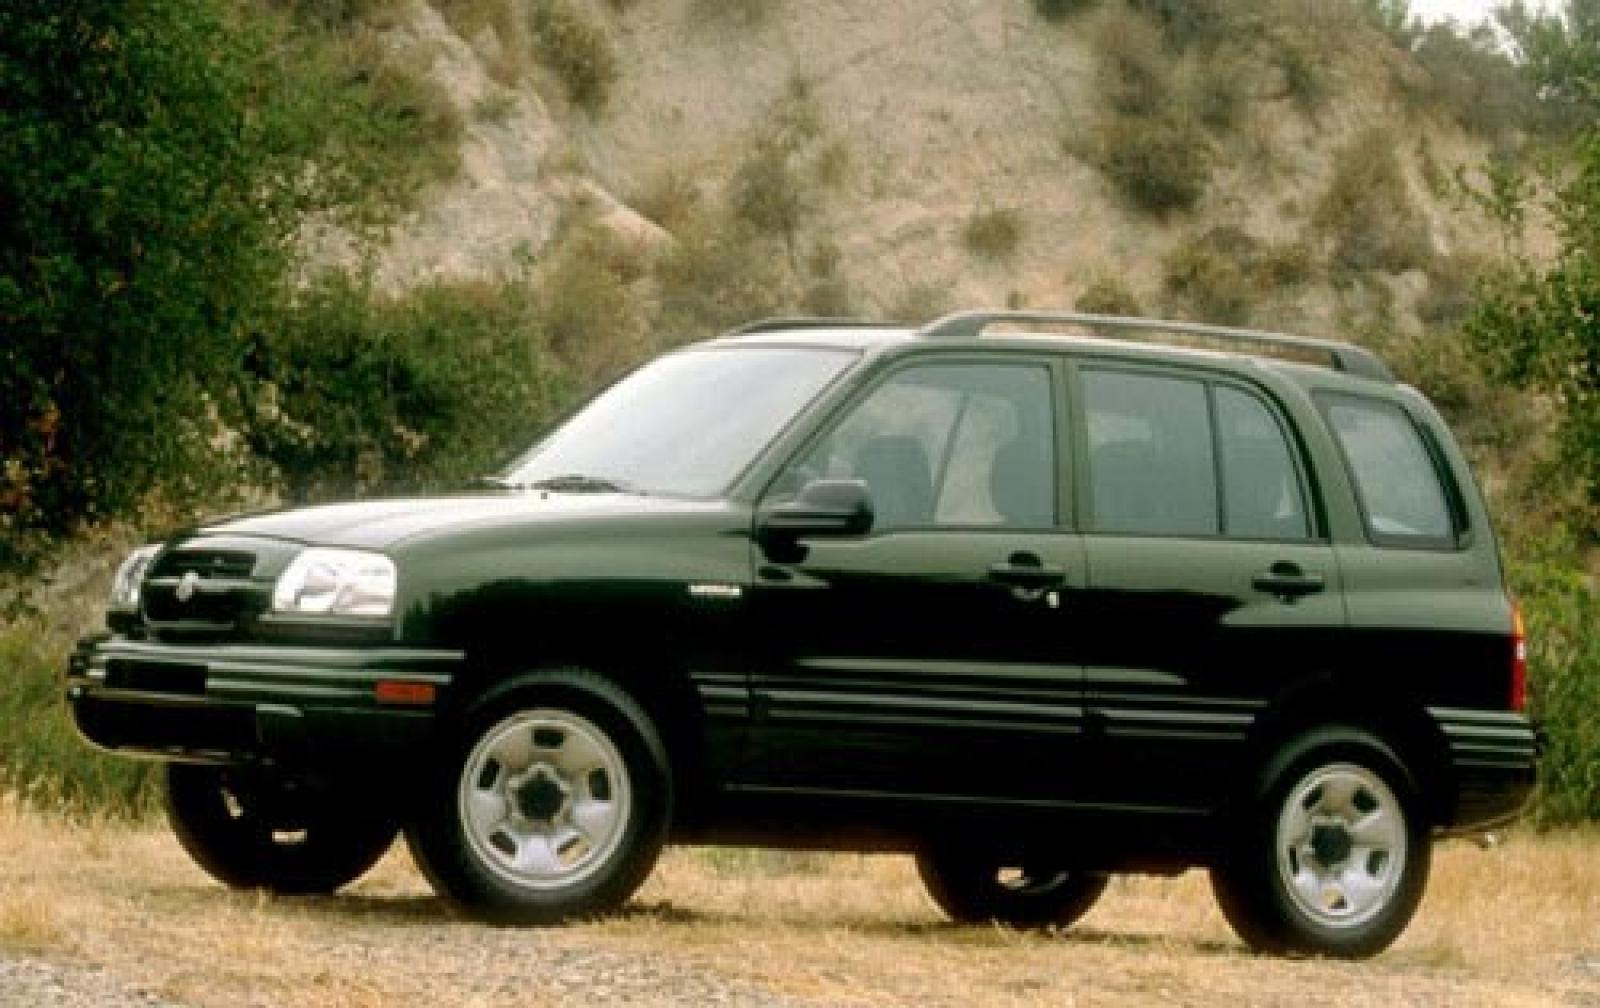 Vitara 2000. Grand Vitara 2000. Suzuki Vitara 2000. Suzuki Grand Vitara 2002. Suzuki Grand Vitara 1999.